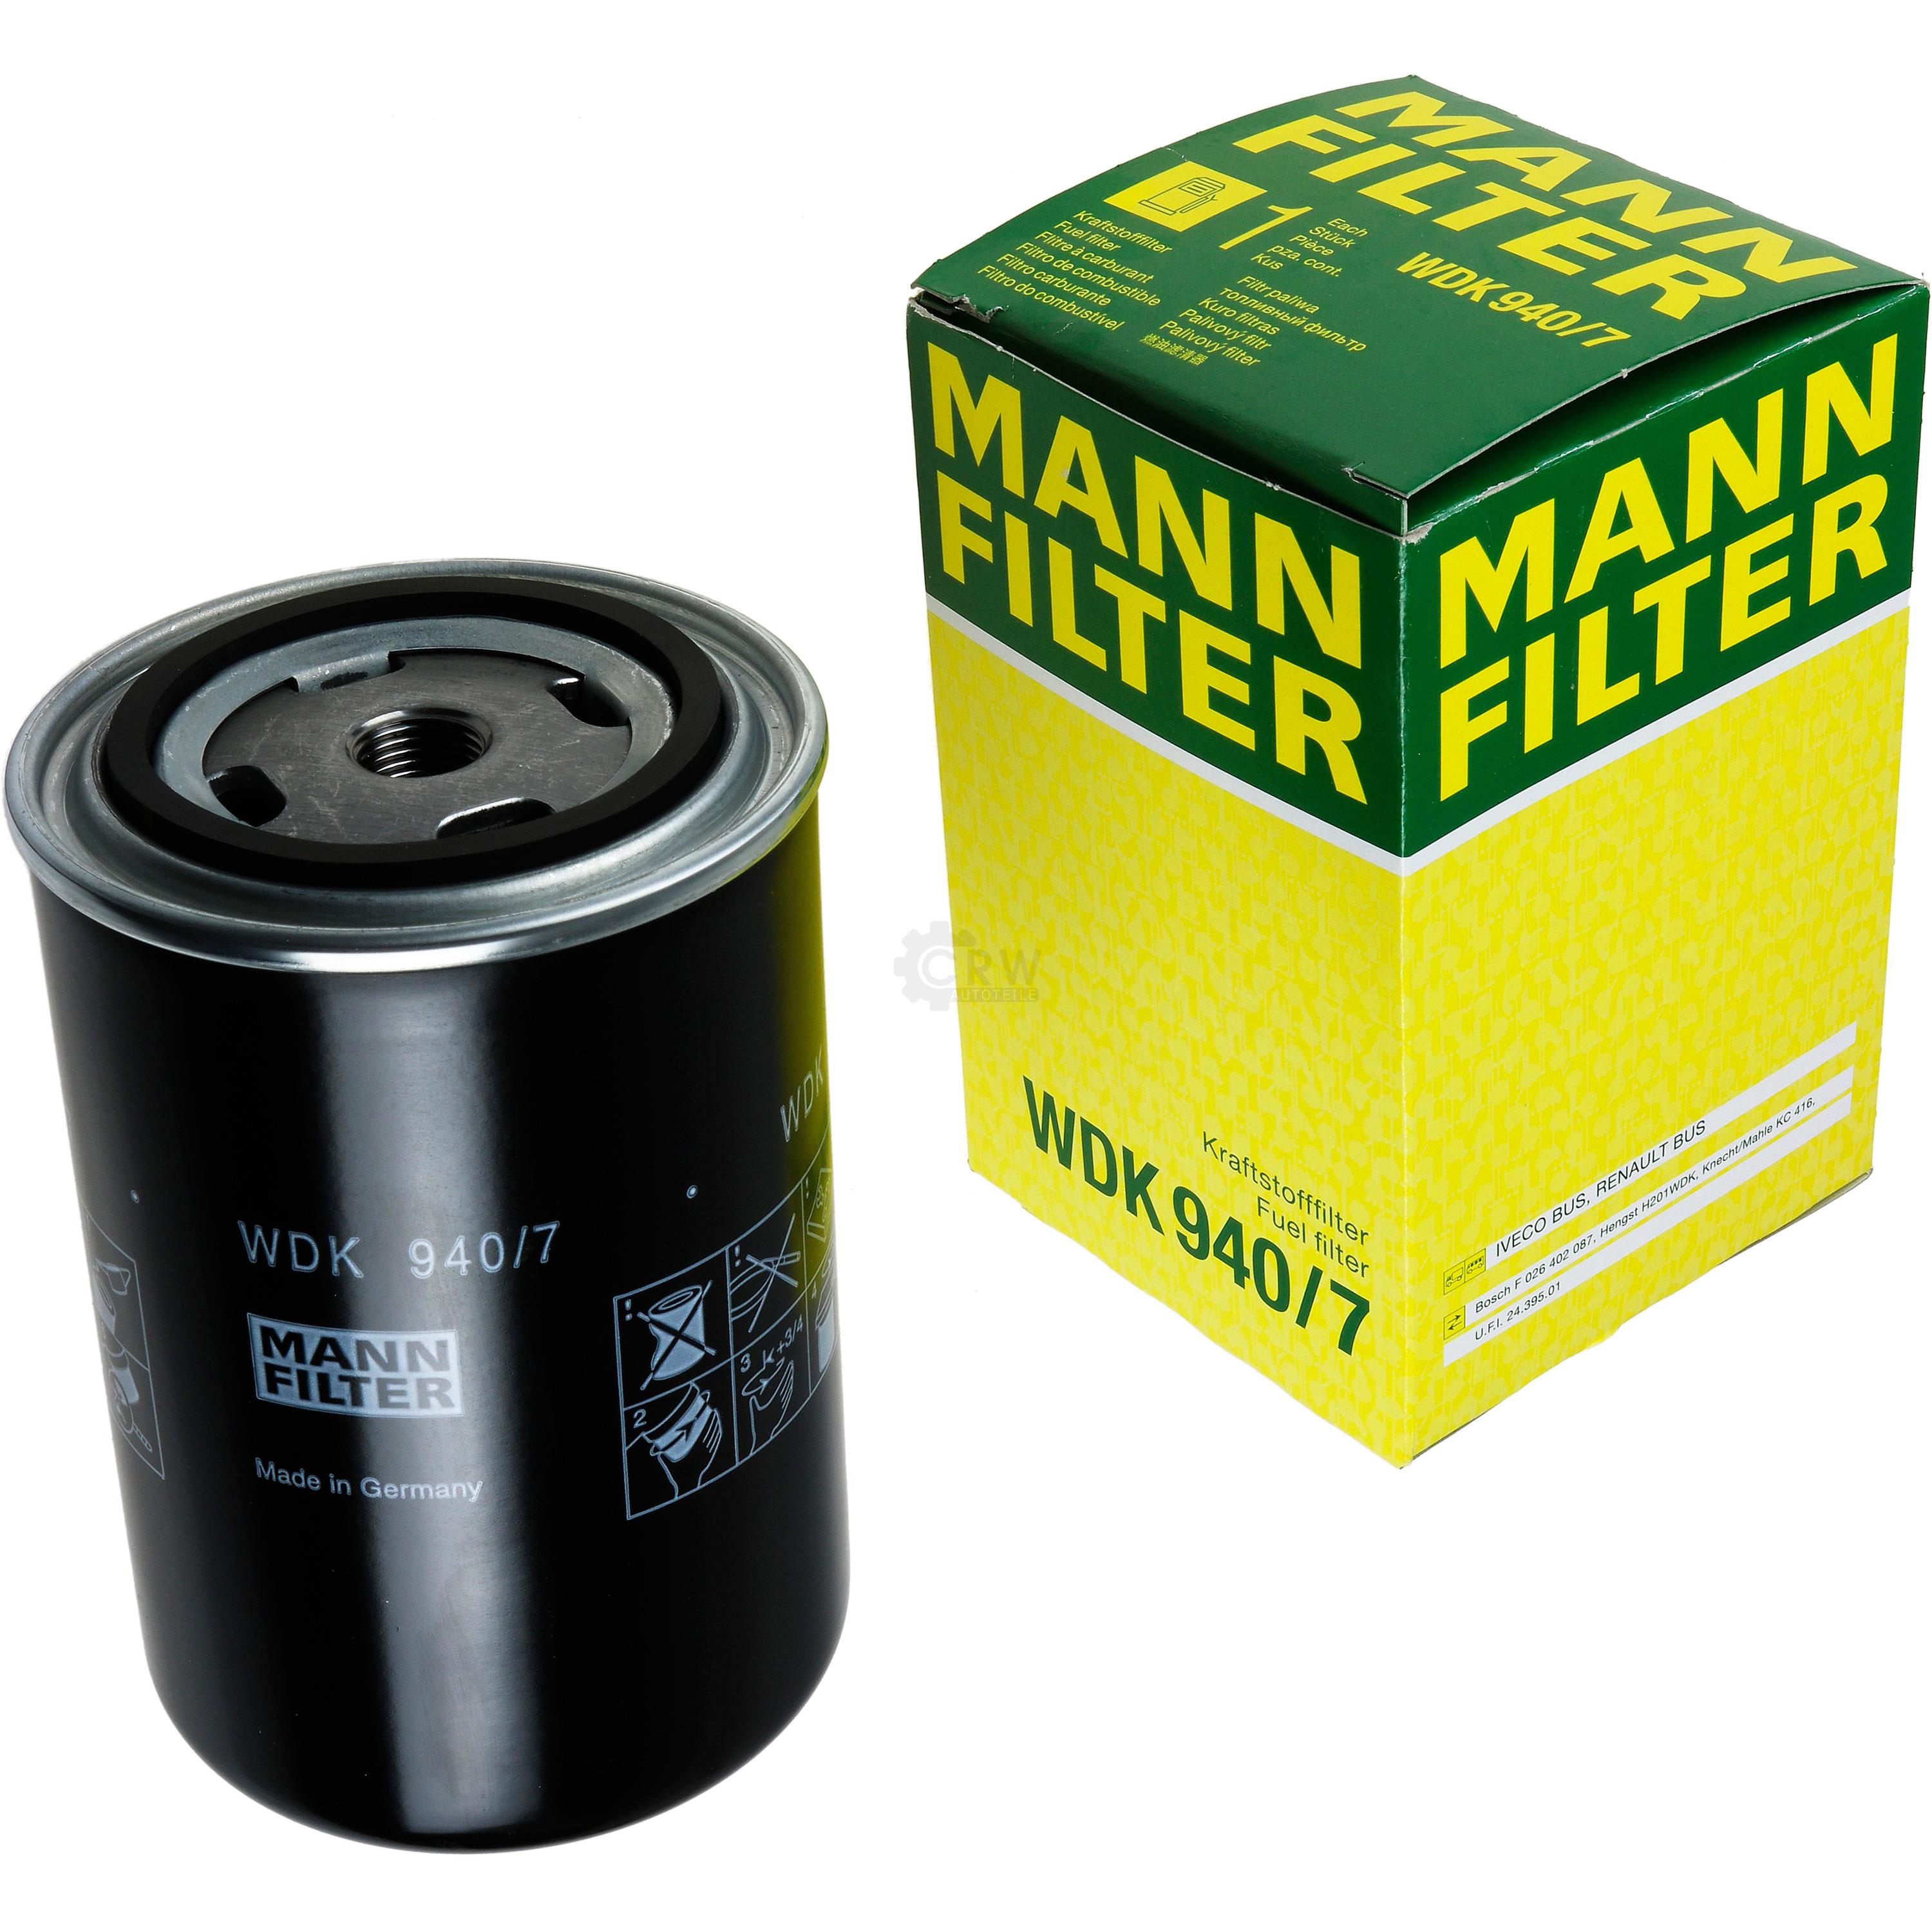 MANN-FILTER Kraftstofffilter WDK 940/7 Fuel Filter